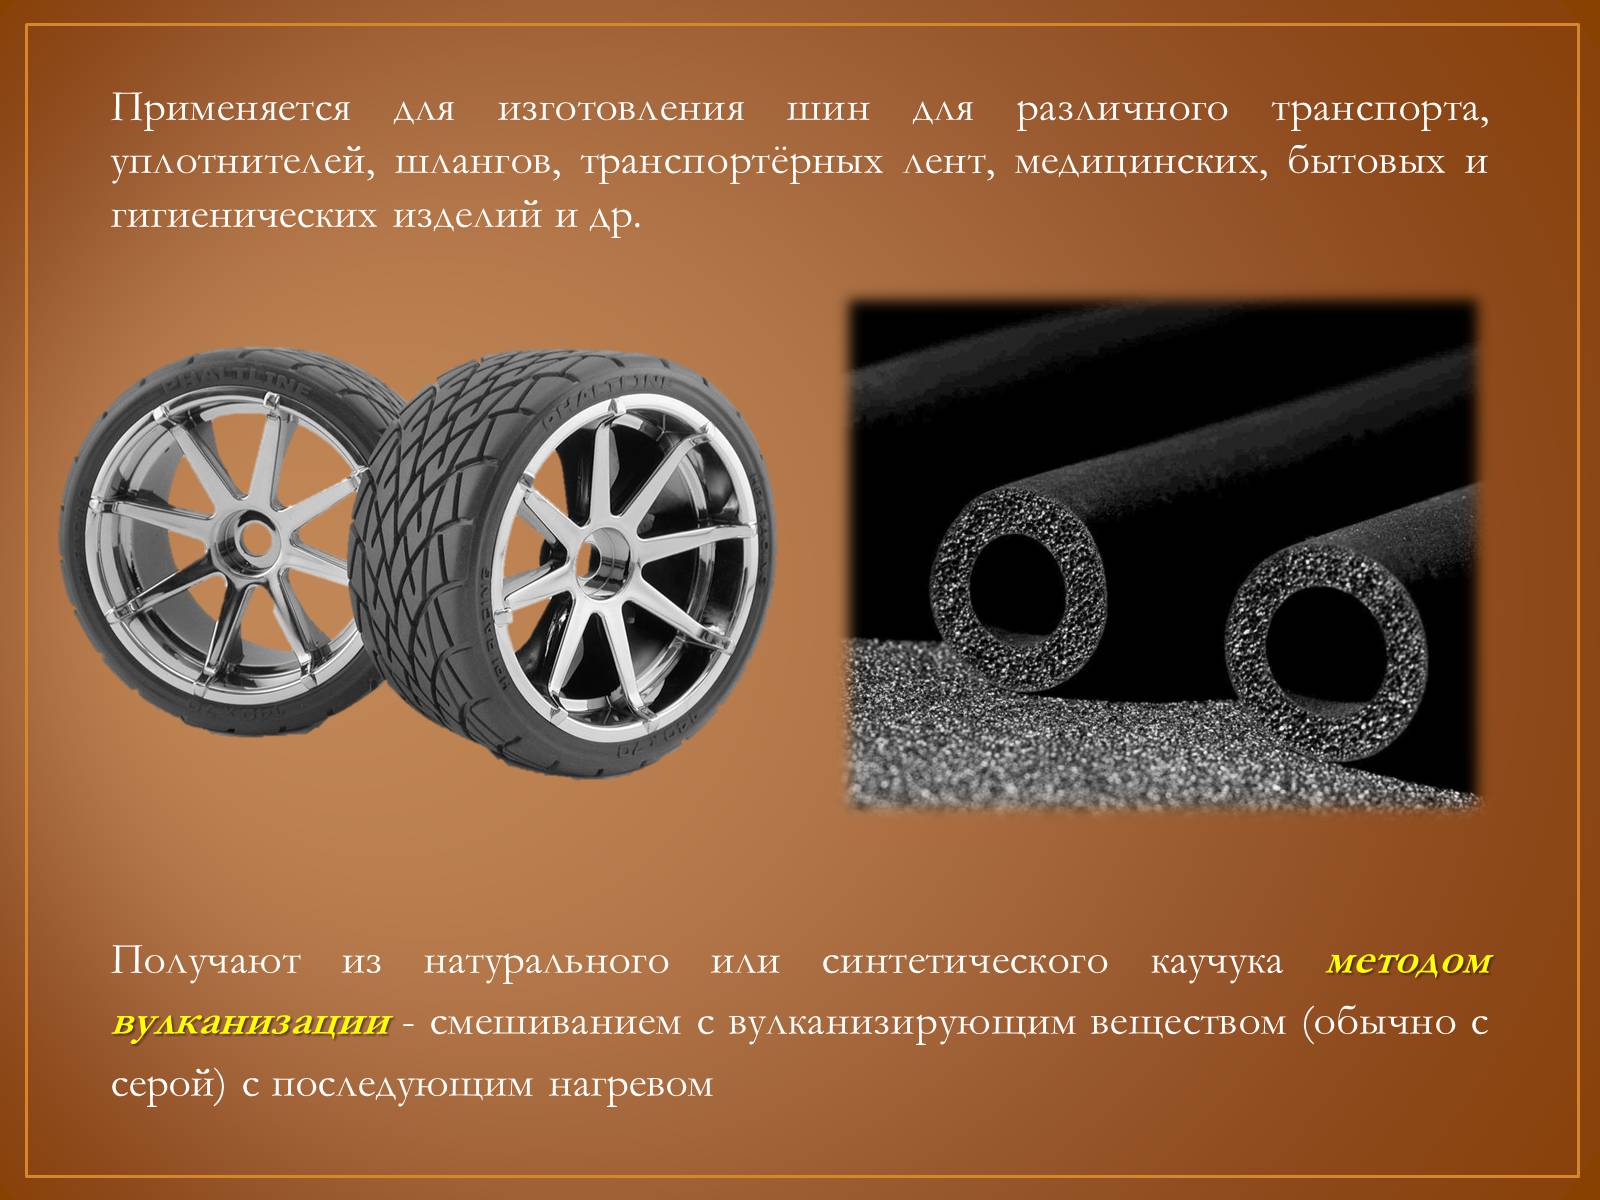 В качестве шины может быть использован. Резина из синтетического каучука. Каучук и резина презентация. Резина презентация. Шина презентация.